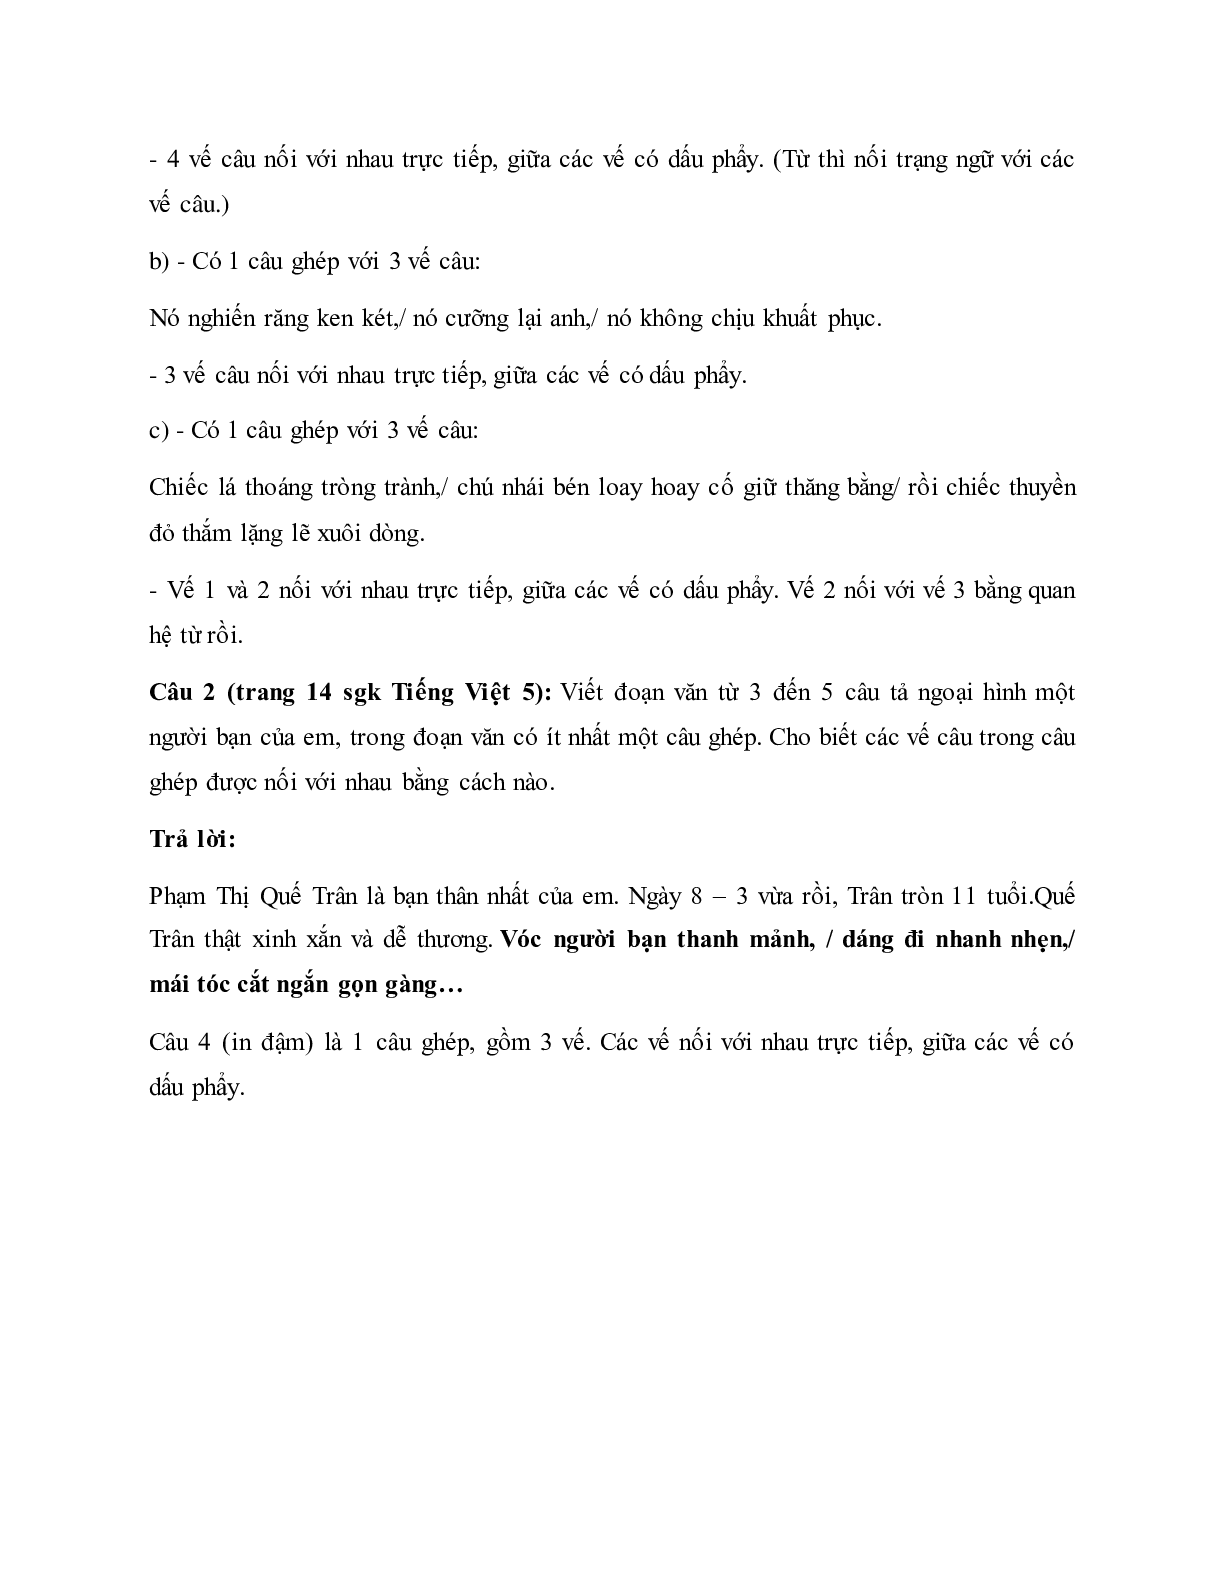 Soạn Tiếng Việt lớp 5: Luyện từ và câu: Cách nối các vế câu ghép mới nhất (trang 3)